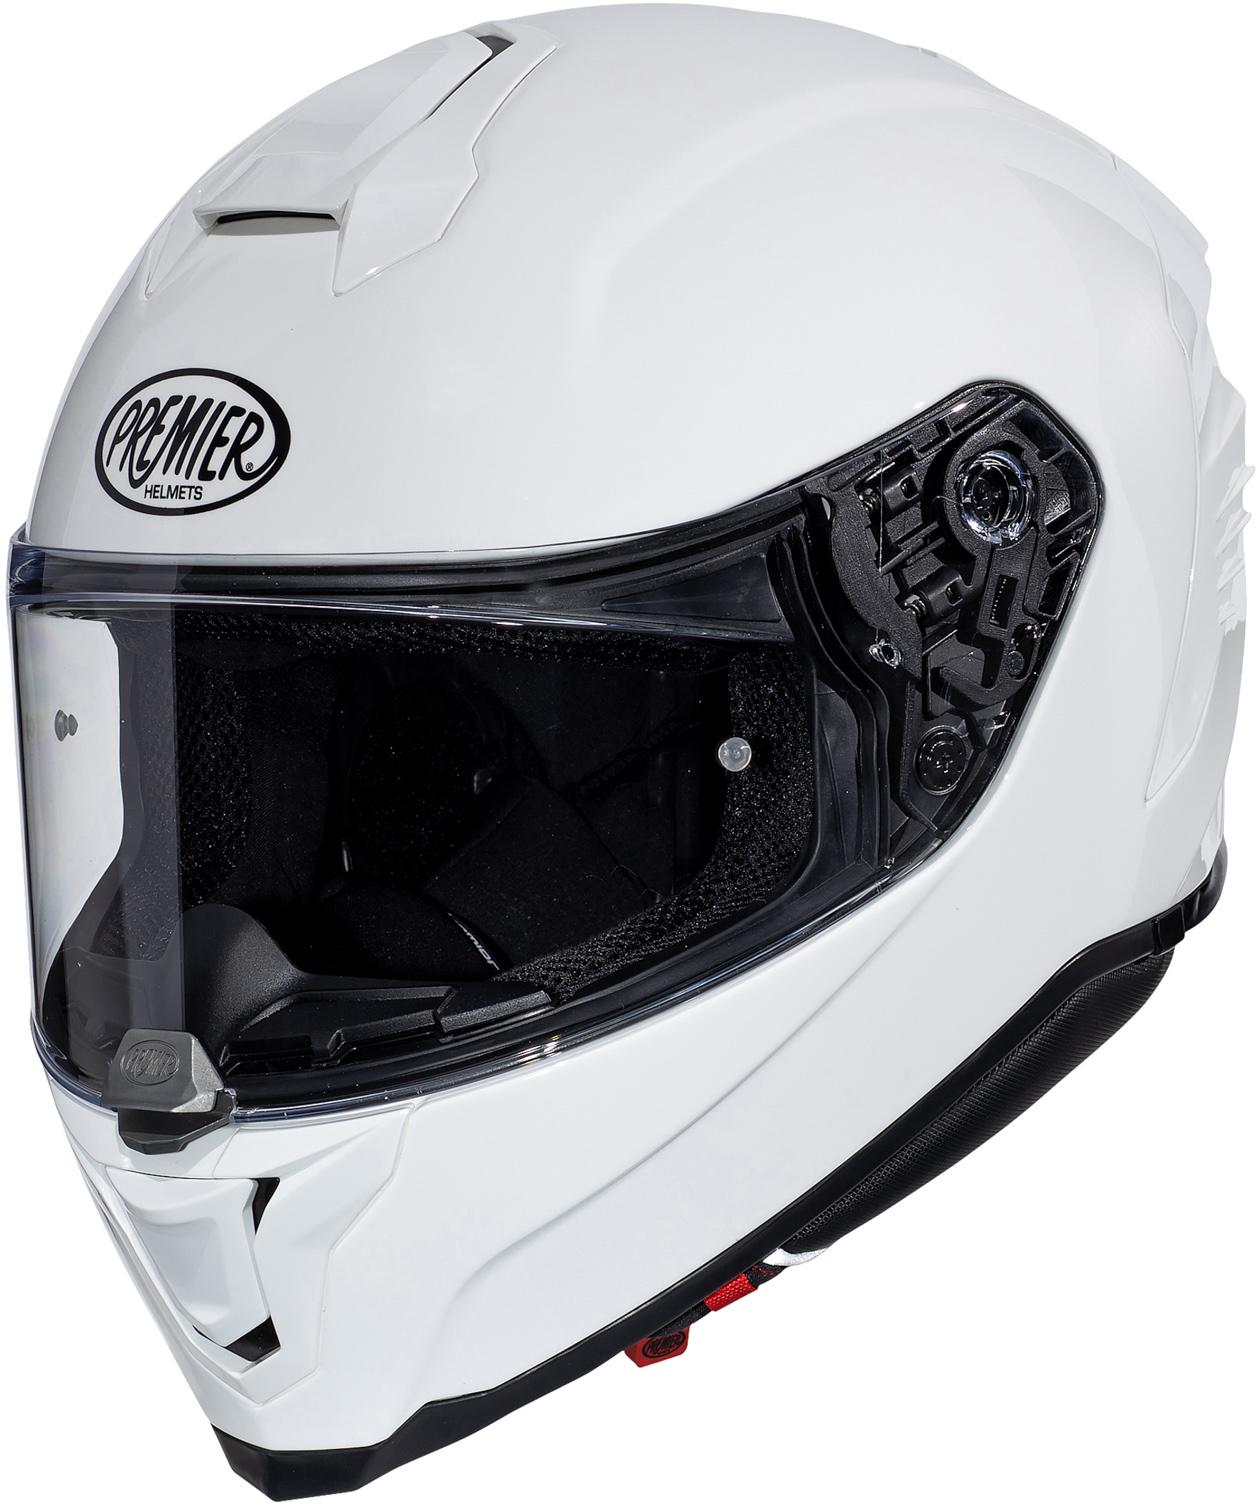 Premier Hyper Full Face Motorcycle Helmet - White, S